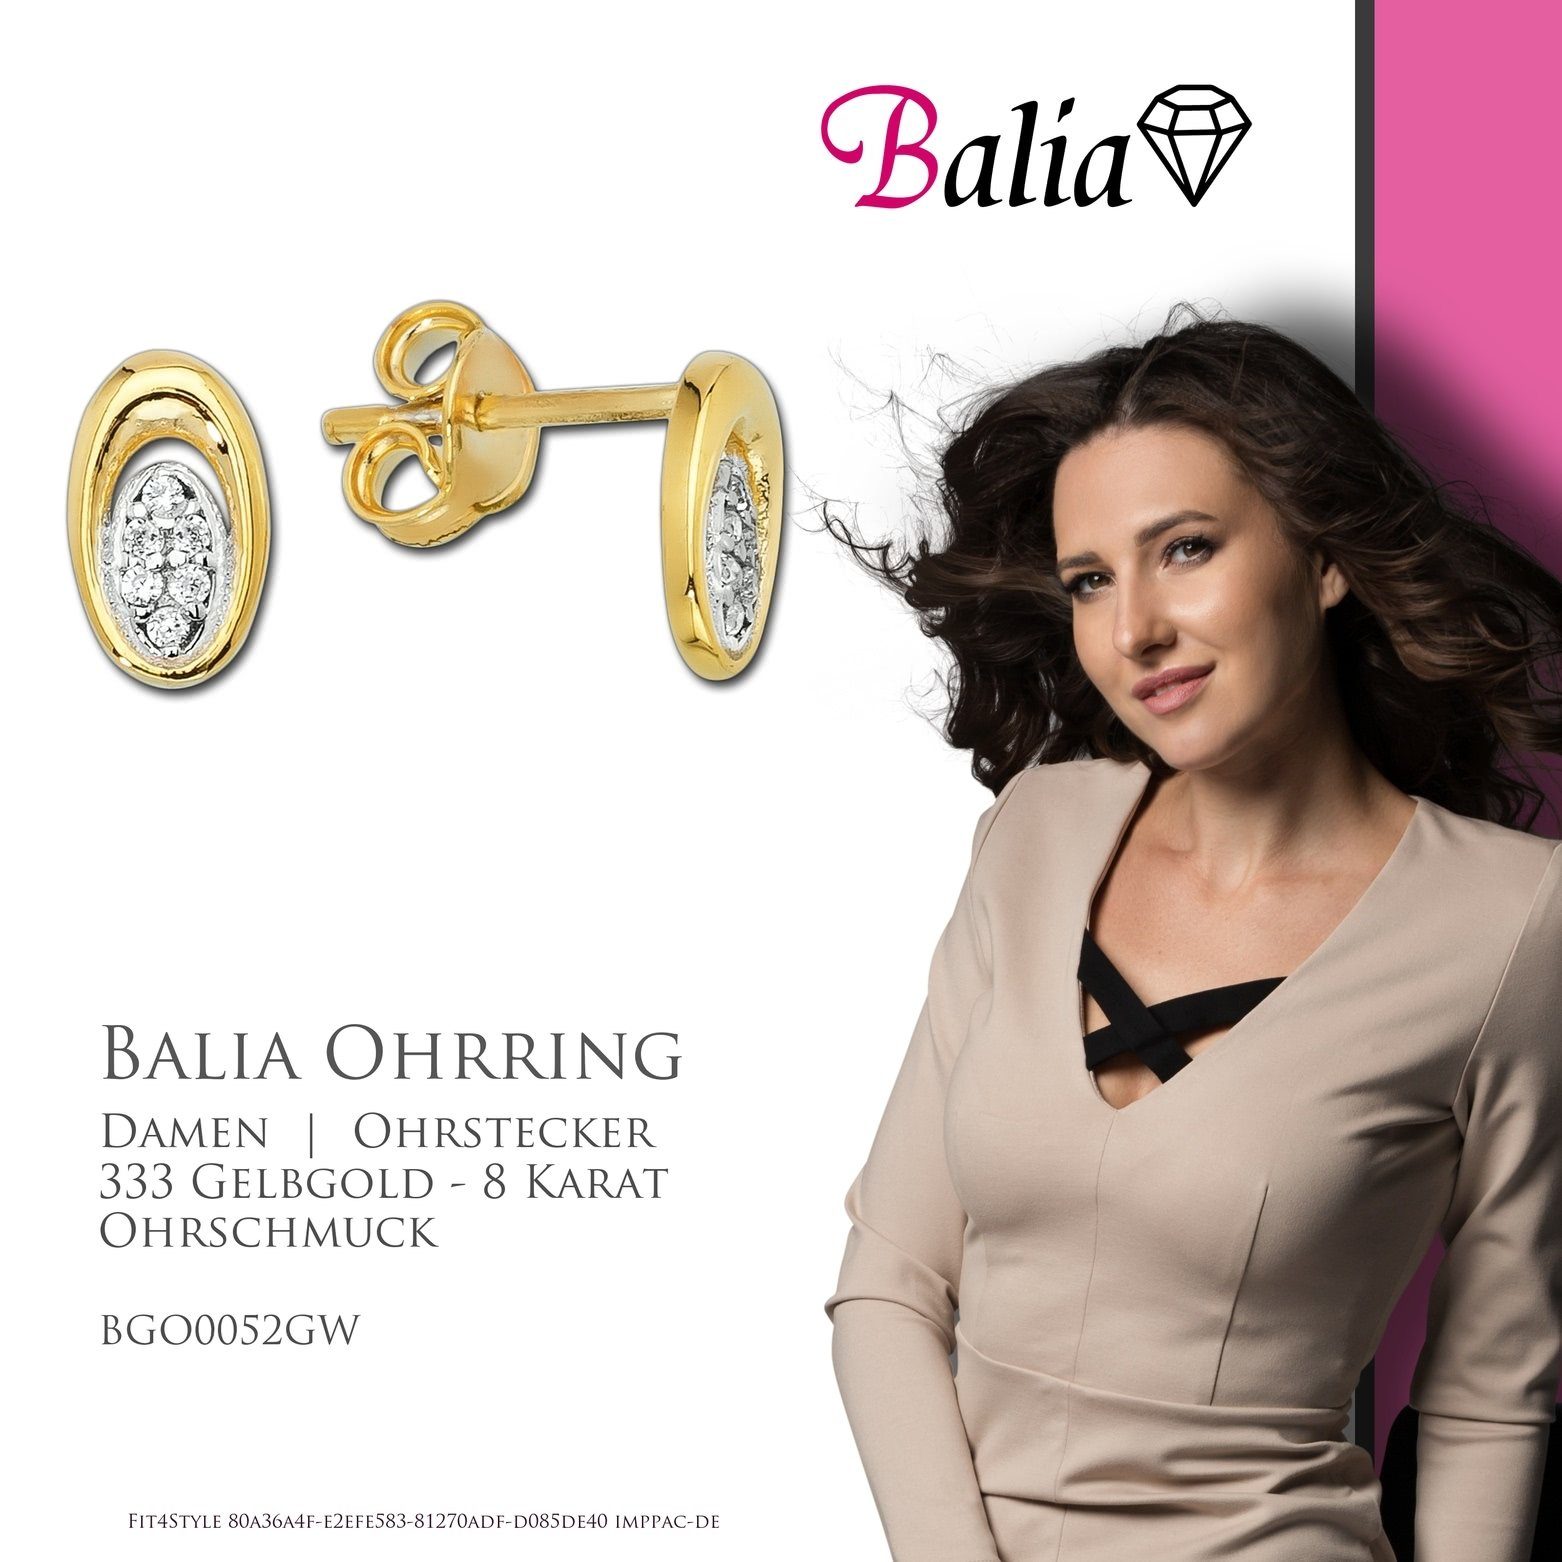 (Ohrstecker), Paar Balia für Farbe: Karat, weiß, Damen Ohrstecker 333 - (Oval) gold aus Ohrstecker Gelbgold 8 Gold Balia Ohrstecker 8K